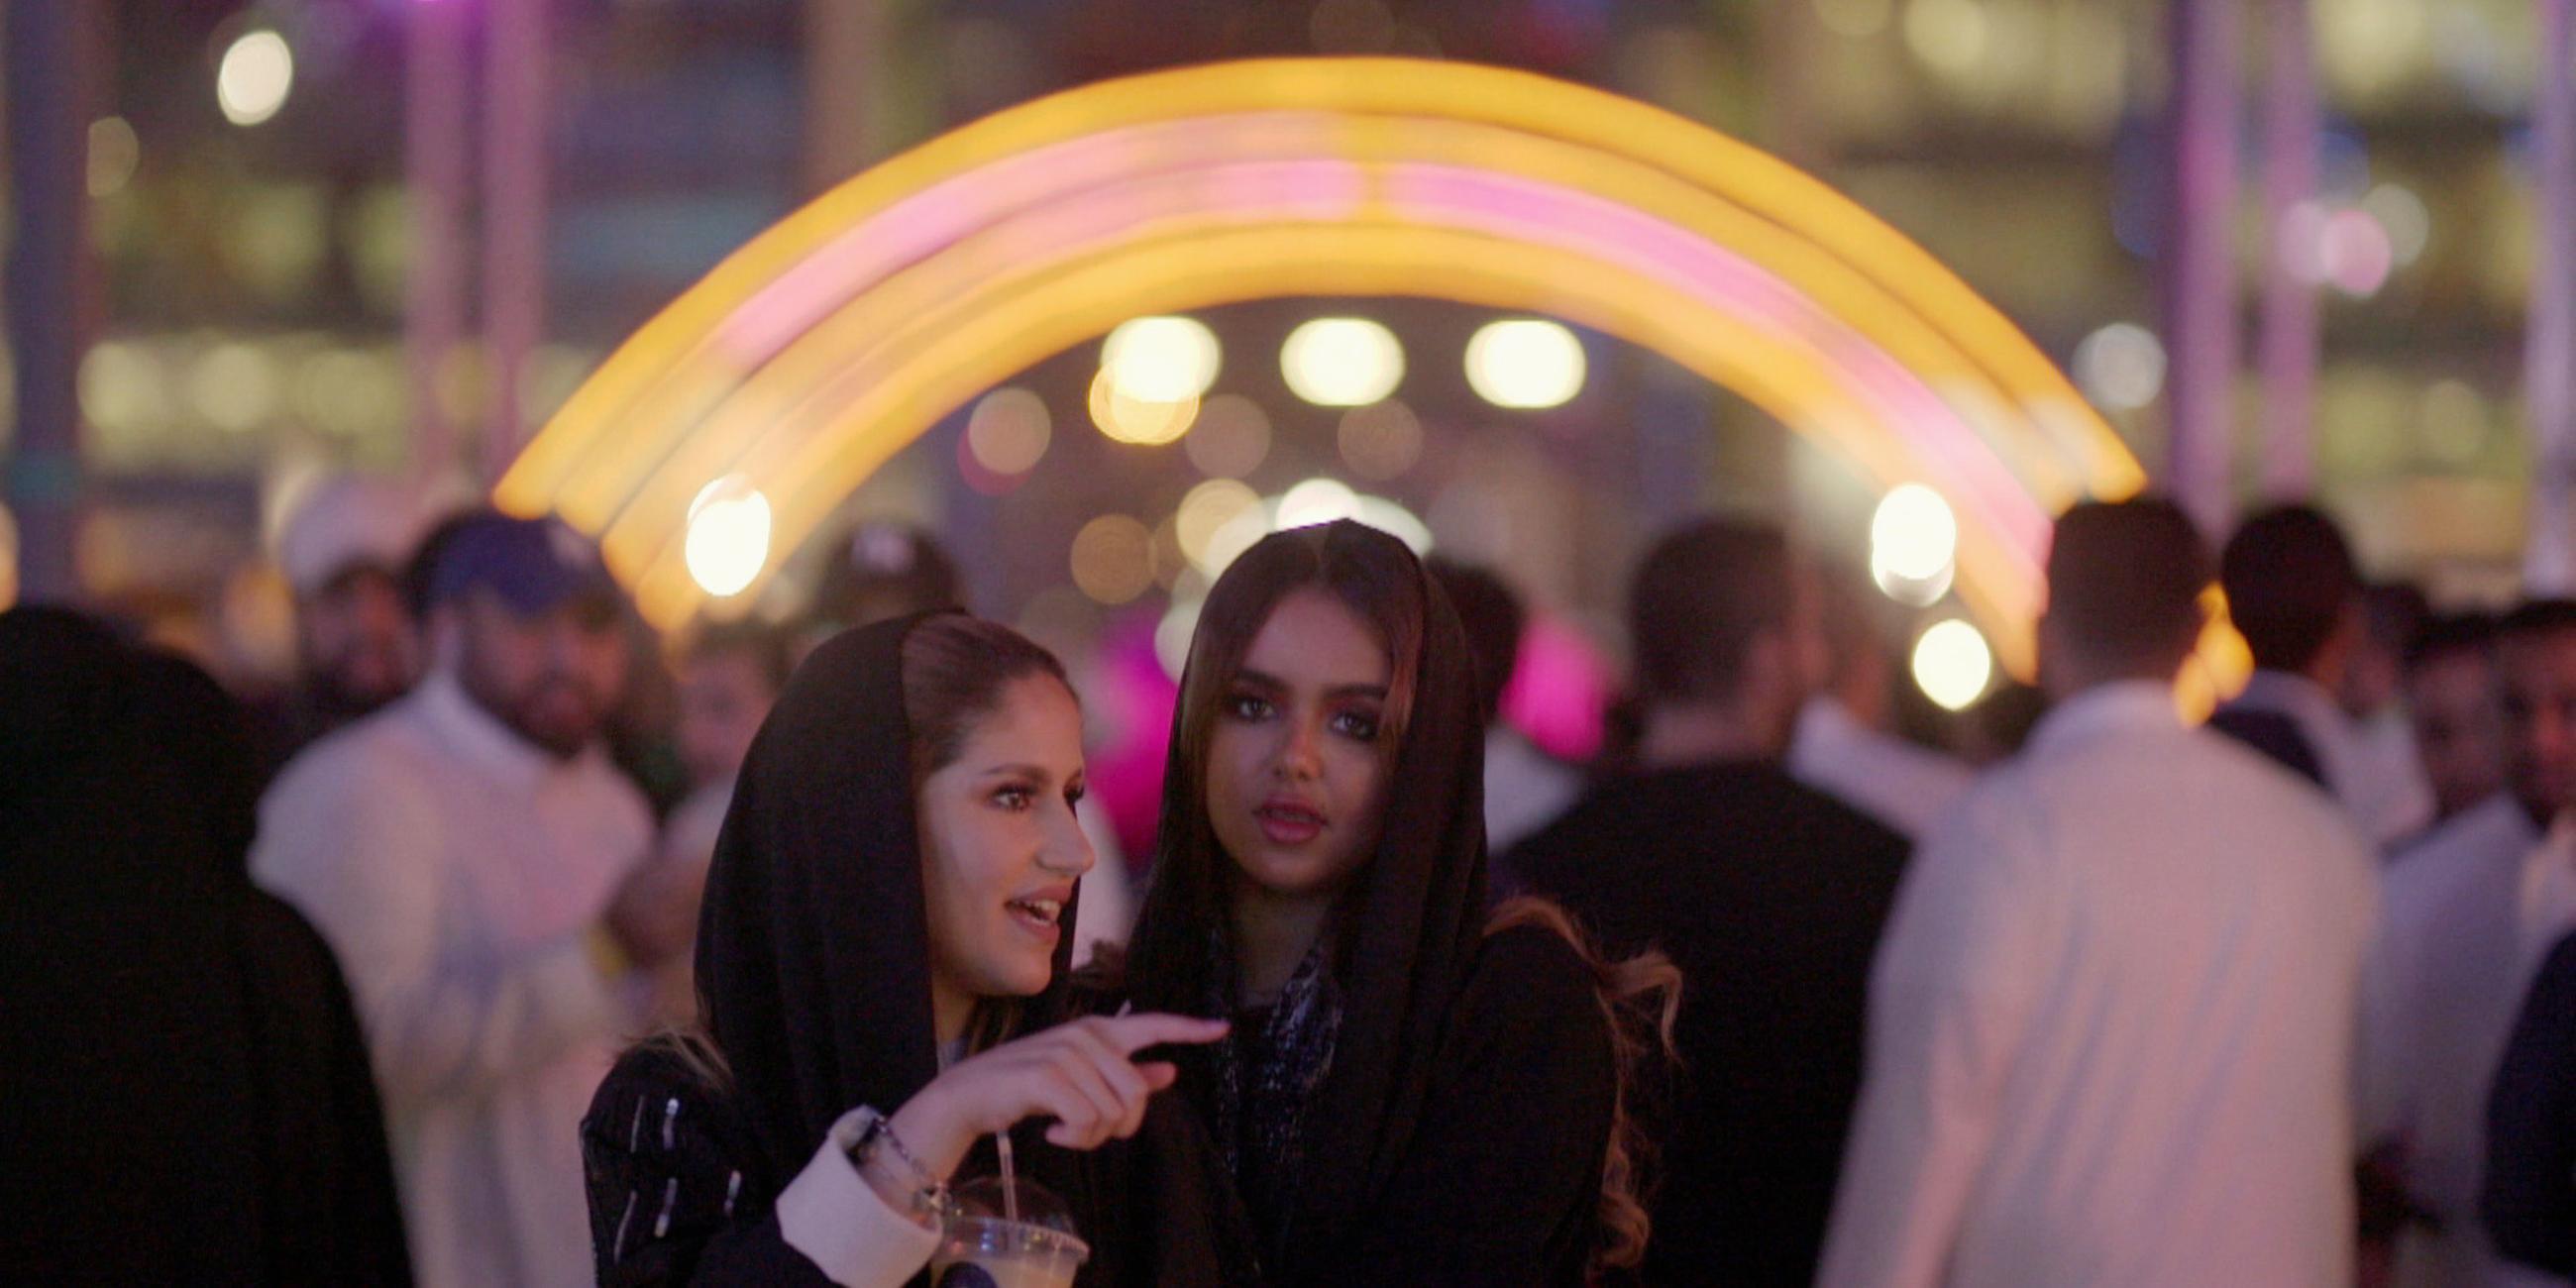 "Saudi Arabien - Öl, Tradition und Zukunft: Neue Freiheit": Abendaufnahme: Geschminkte saudische Frauen vor einer Menschenmenge. Im Hintergrund ein Lichtbogen.